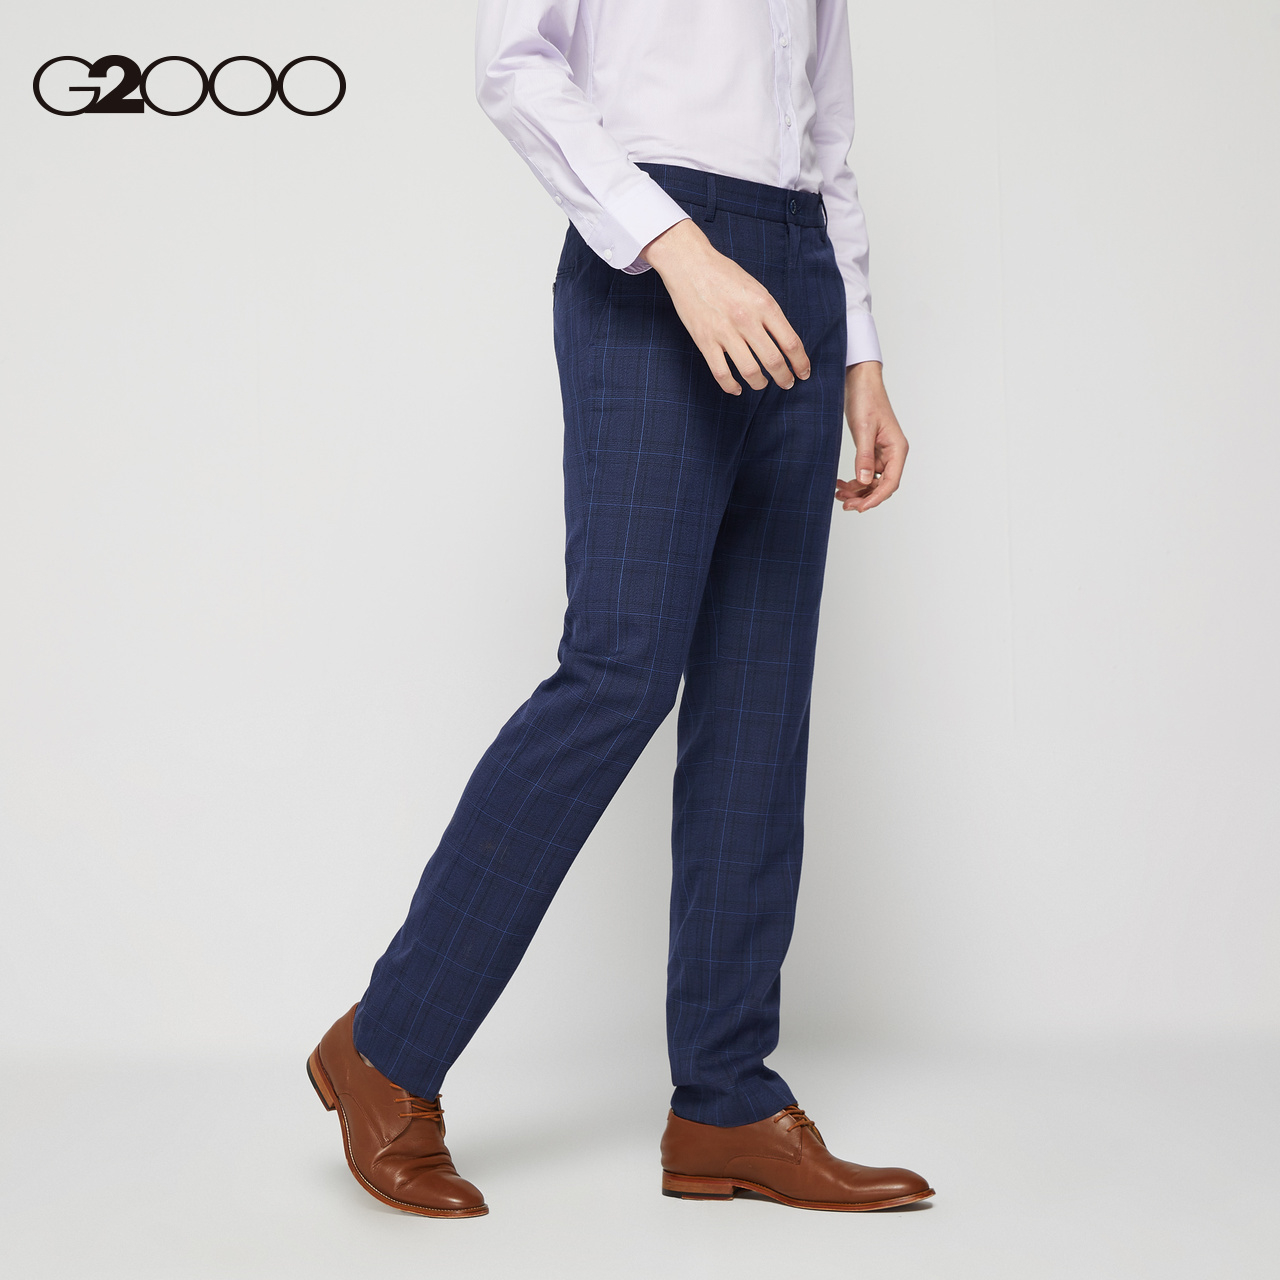 G2000 nam quần thời trang mùa hè thường rửa chống cơ thể vải quần kẻ sọc phù hợp trong lành.